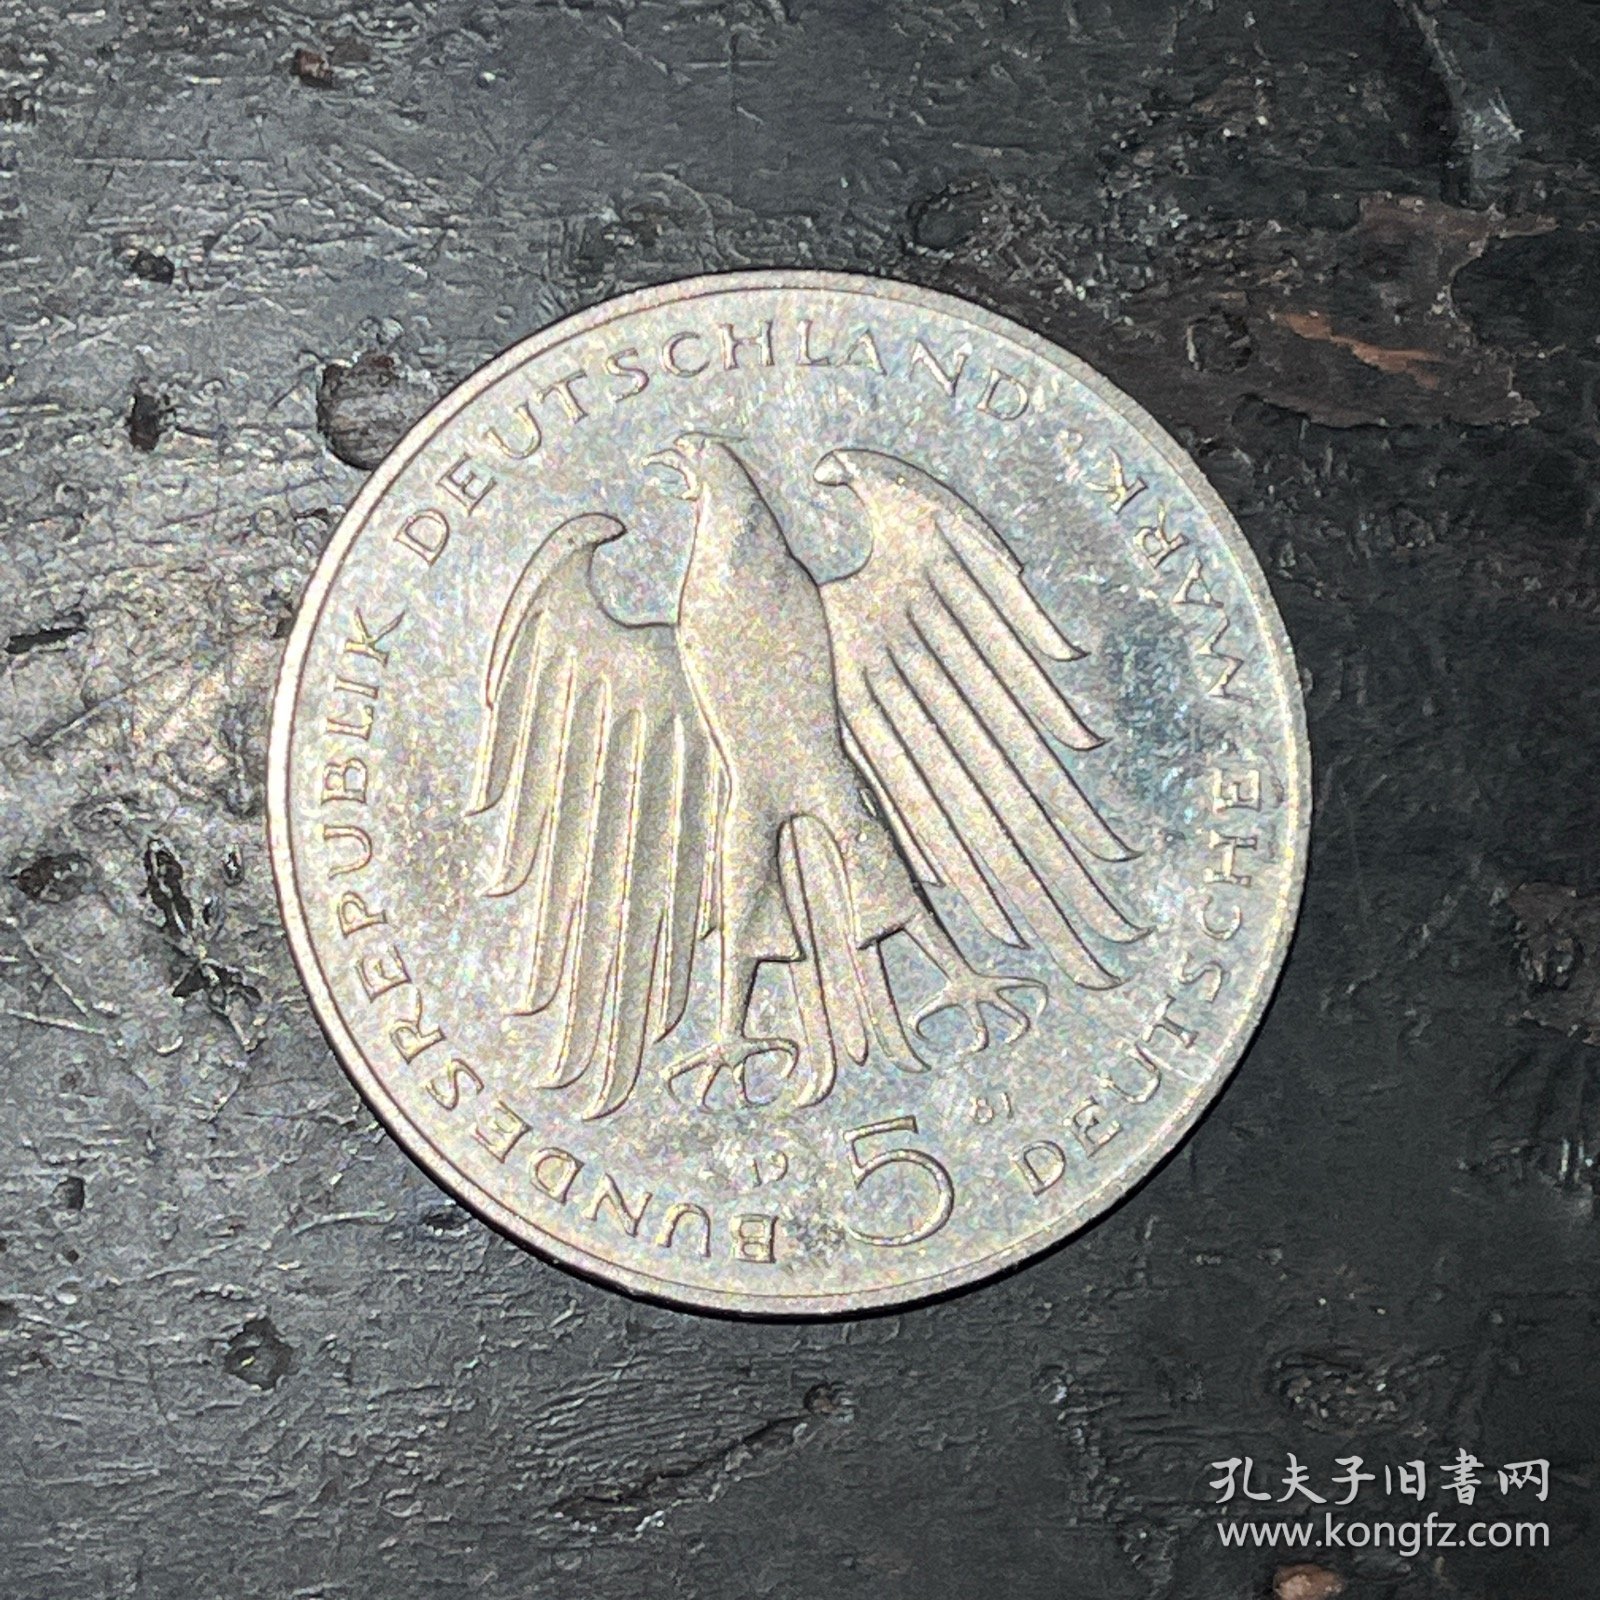 德国1981年5马克 改革家 斯坦因 人物纪念币 铜镍硬币